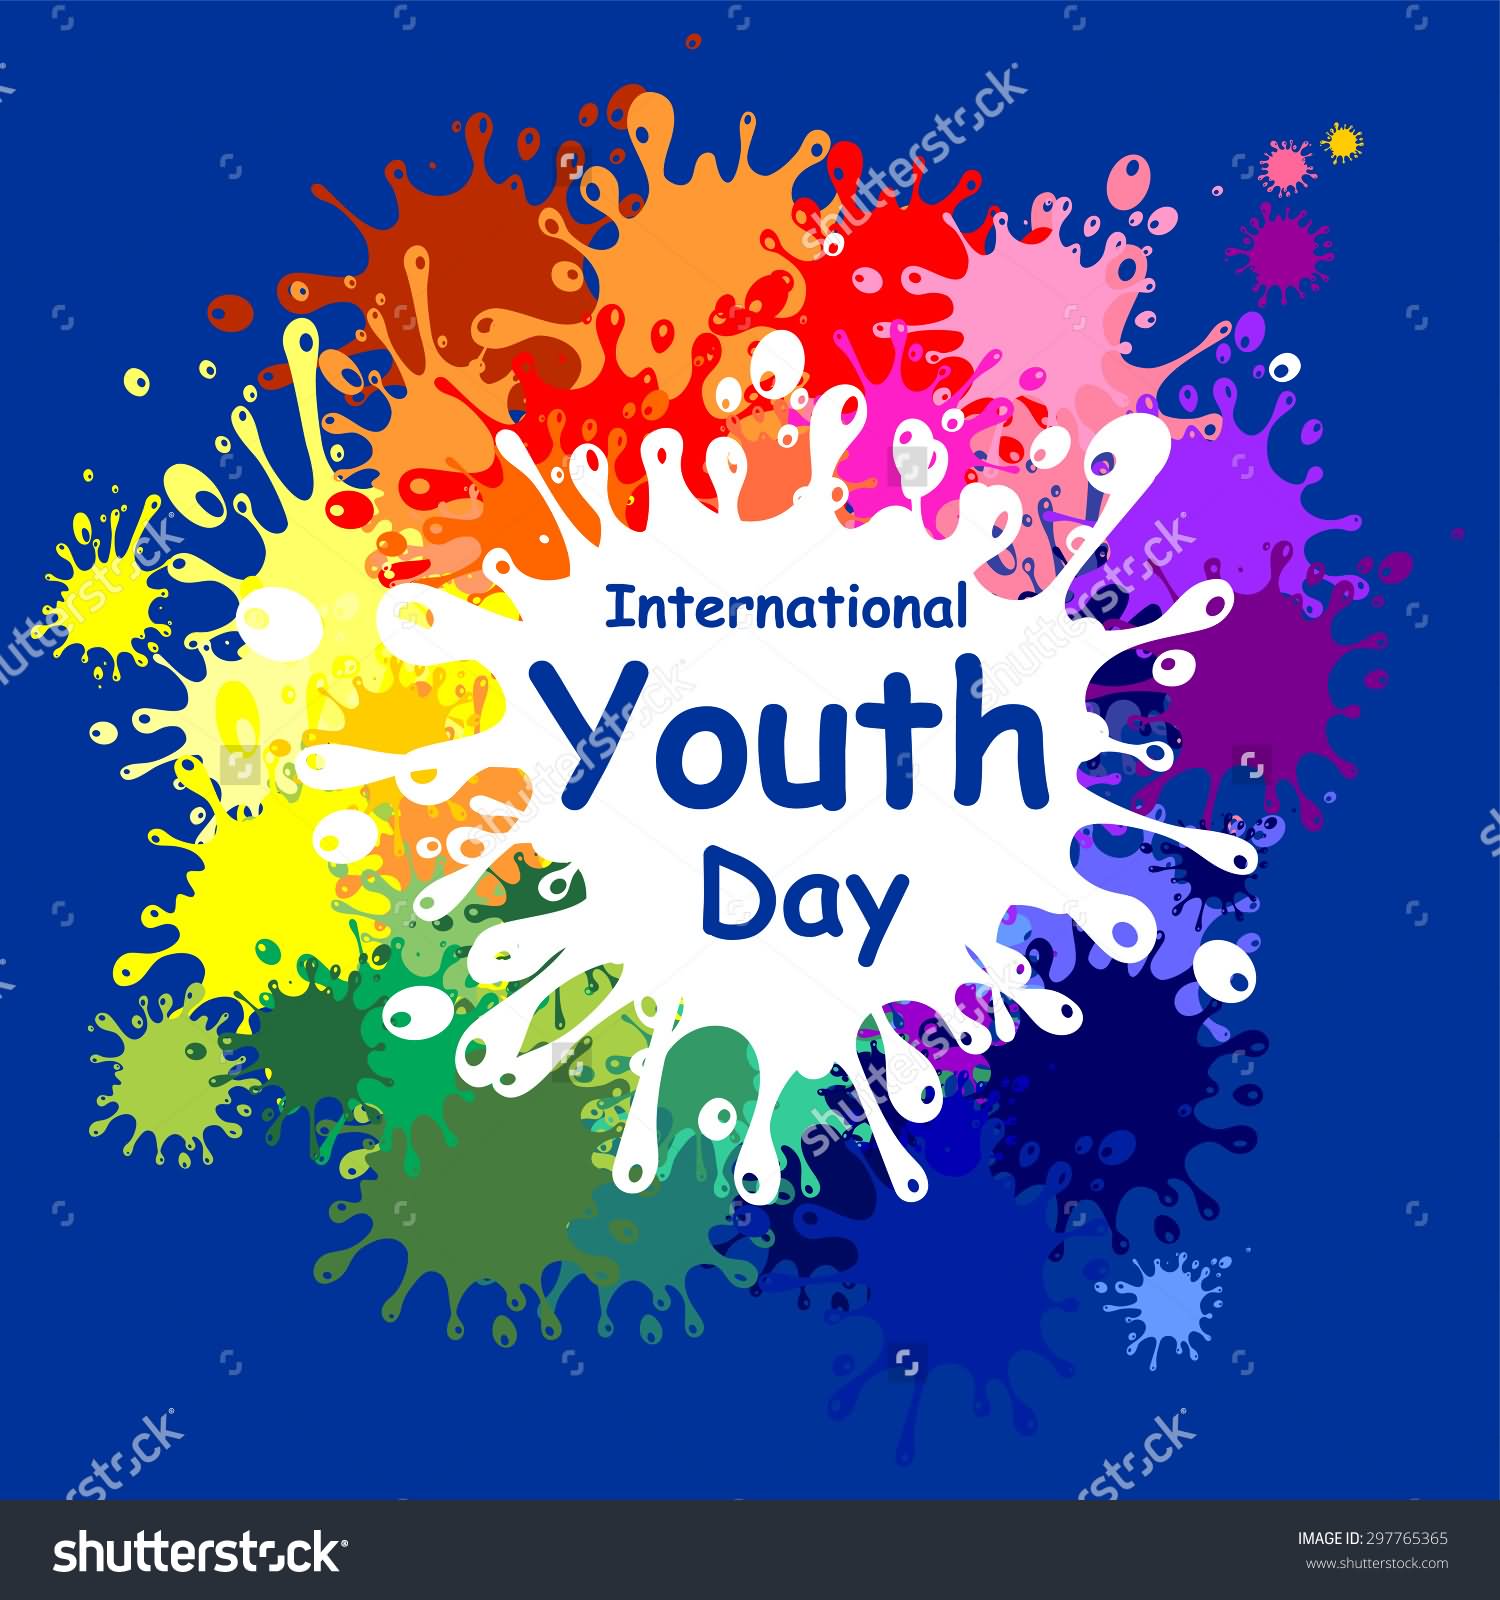 International Youth Day Colorful Splash Image